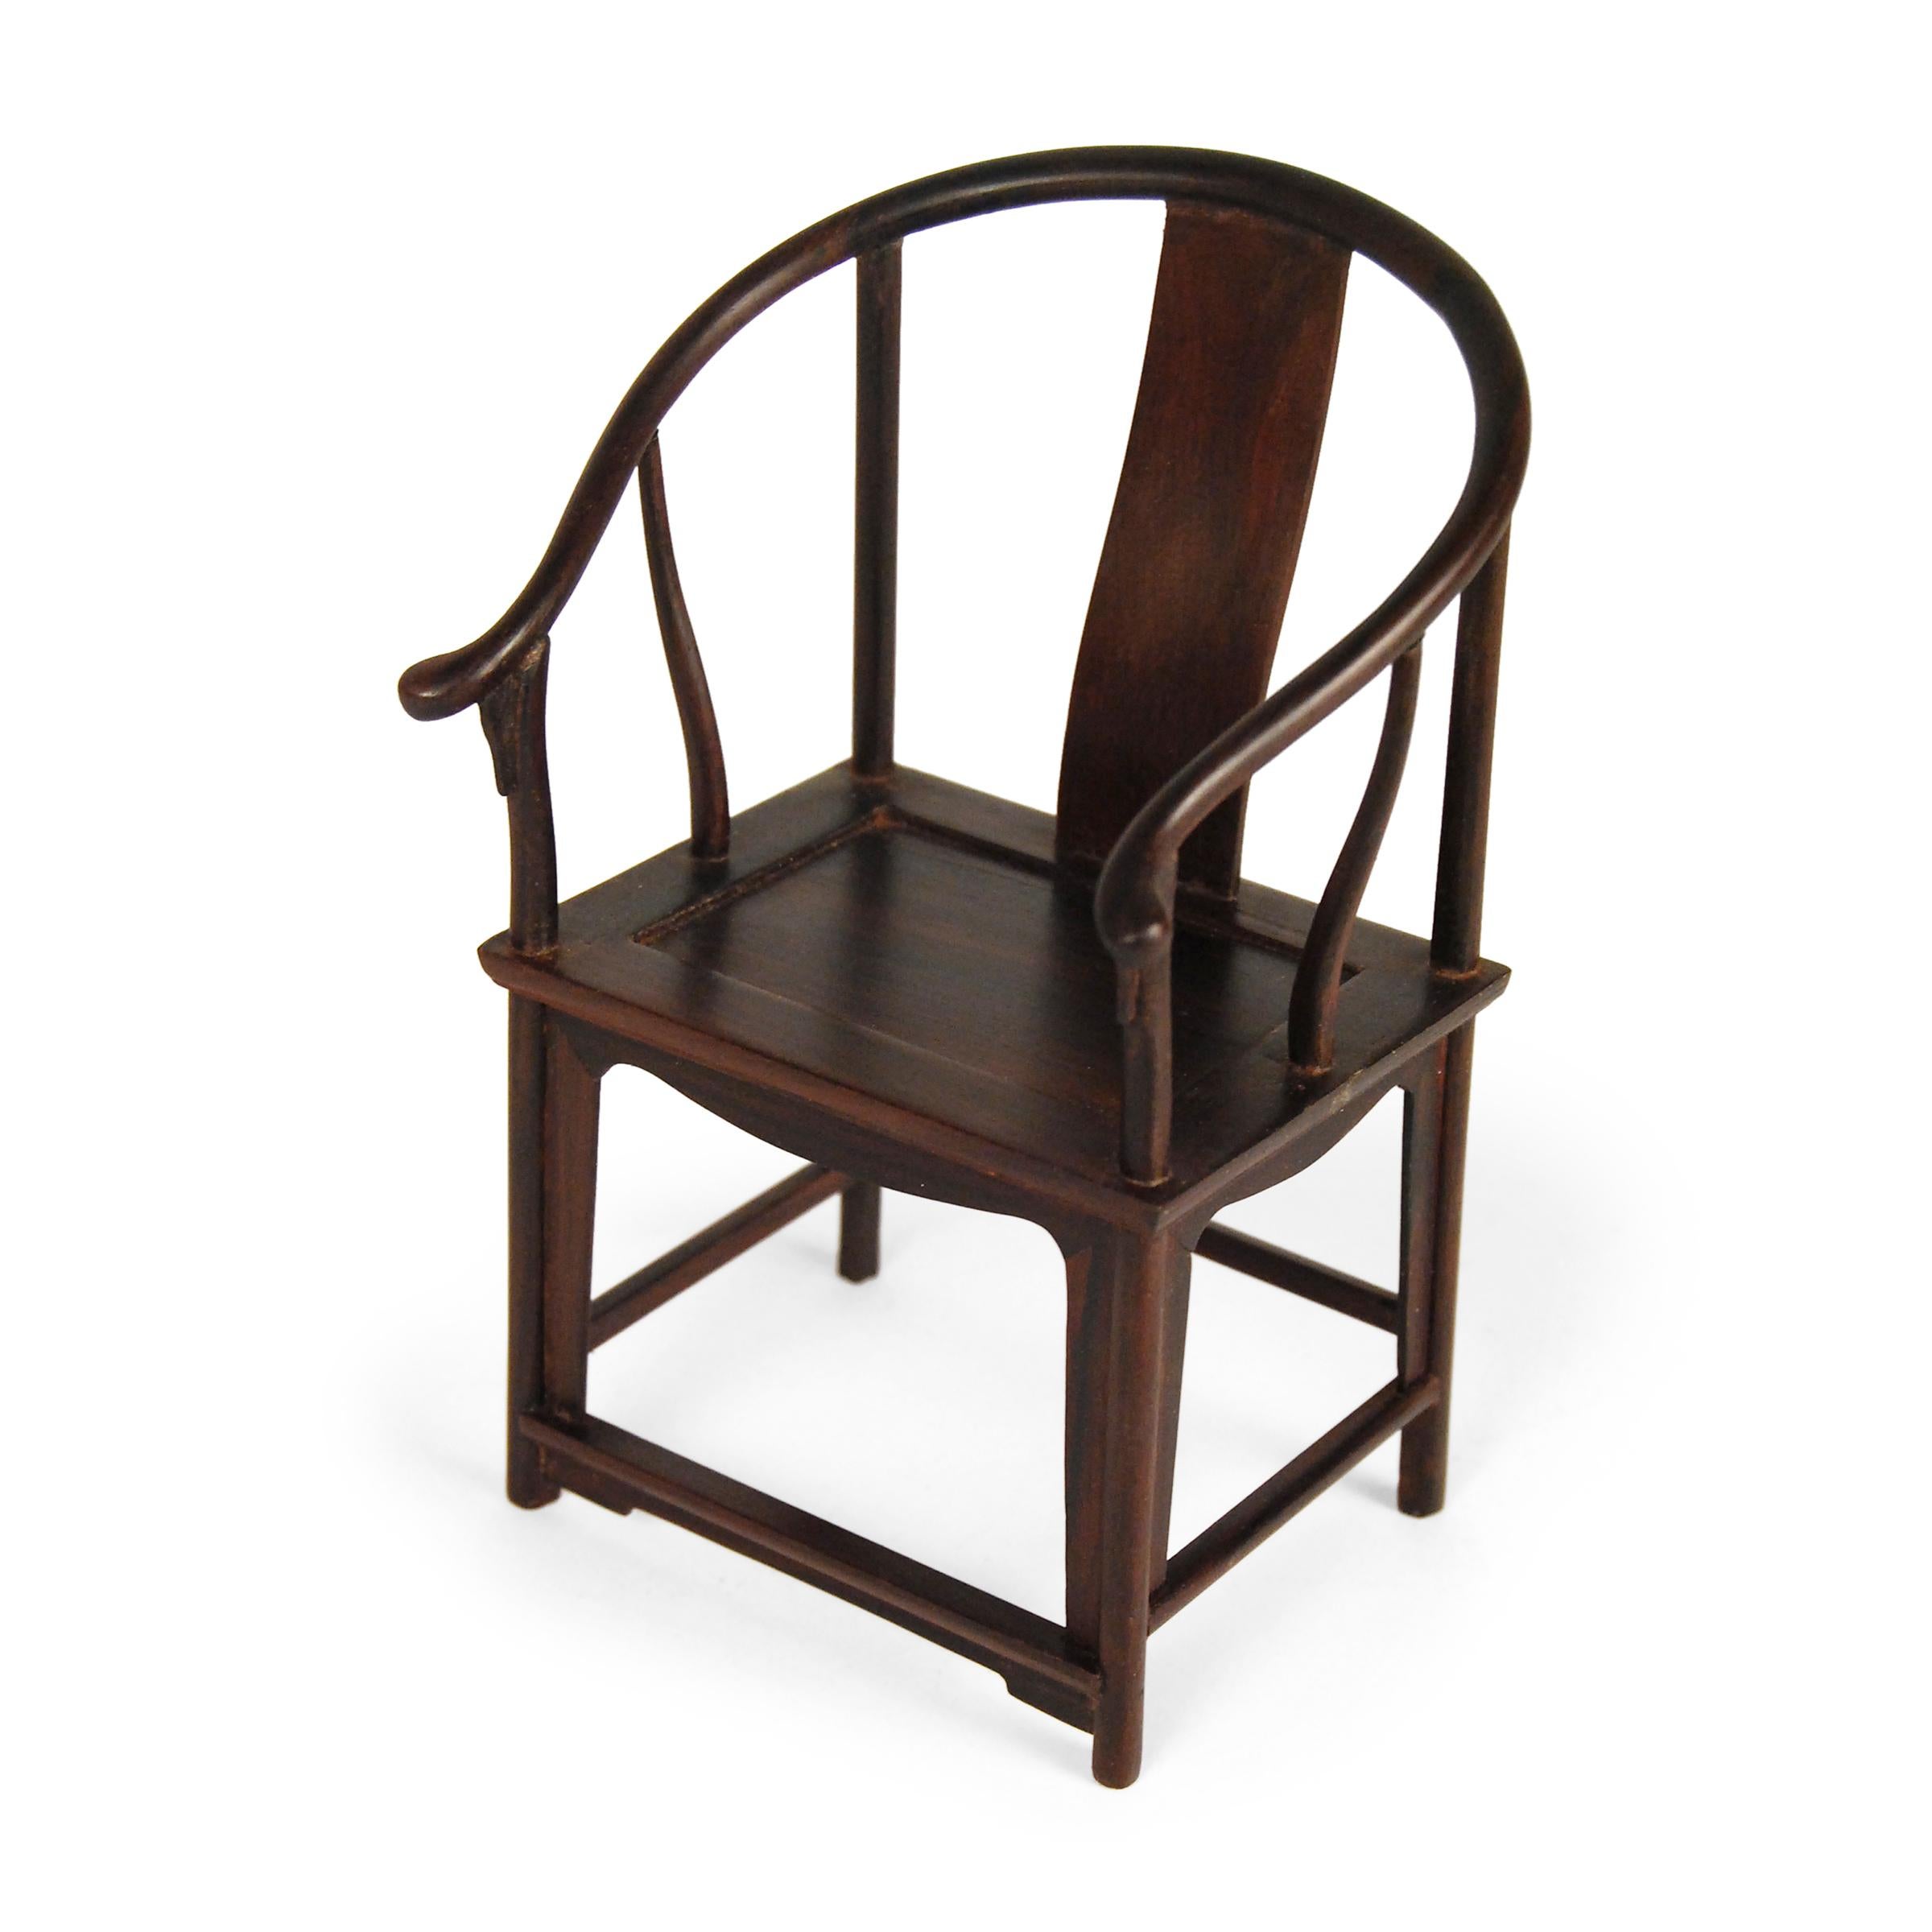 Dieses Miniatur-Möbelset - mit einer Höhe von nur 6 Zoll - bildet klassische chinesische Möbelformen bis ins kleinste Detail nach. Das Set besteht aus einem schönen Hartholz, das für seine Stärke und dunkle Farbe geschätzt wird, und umfasst einen